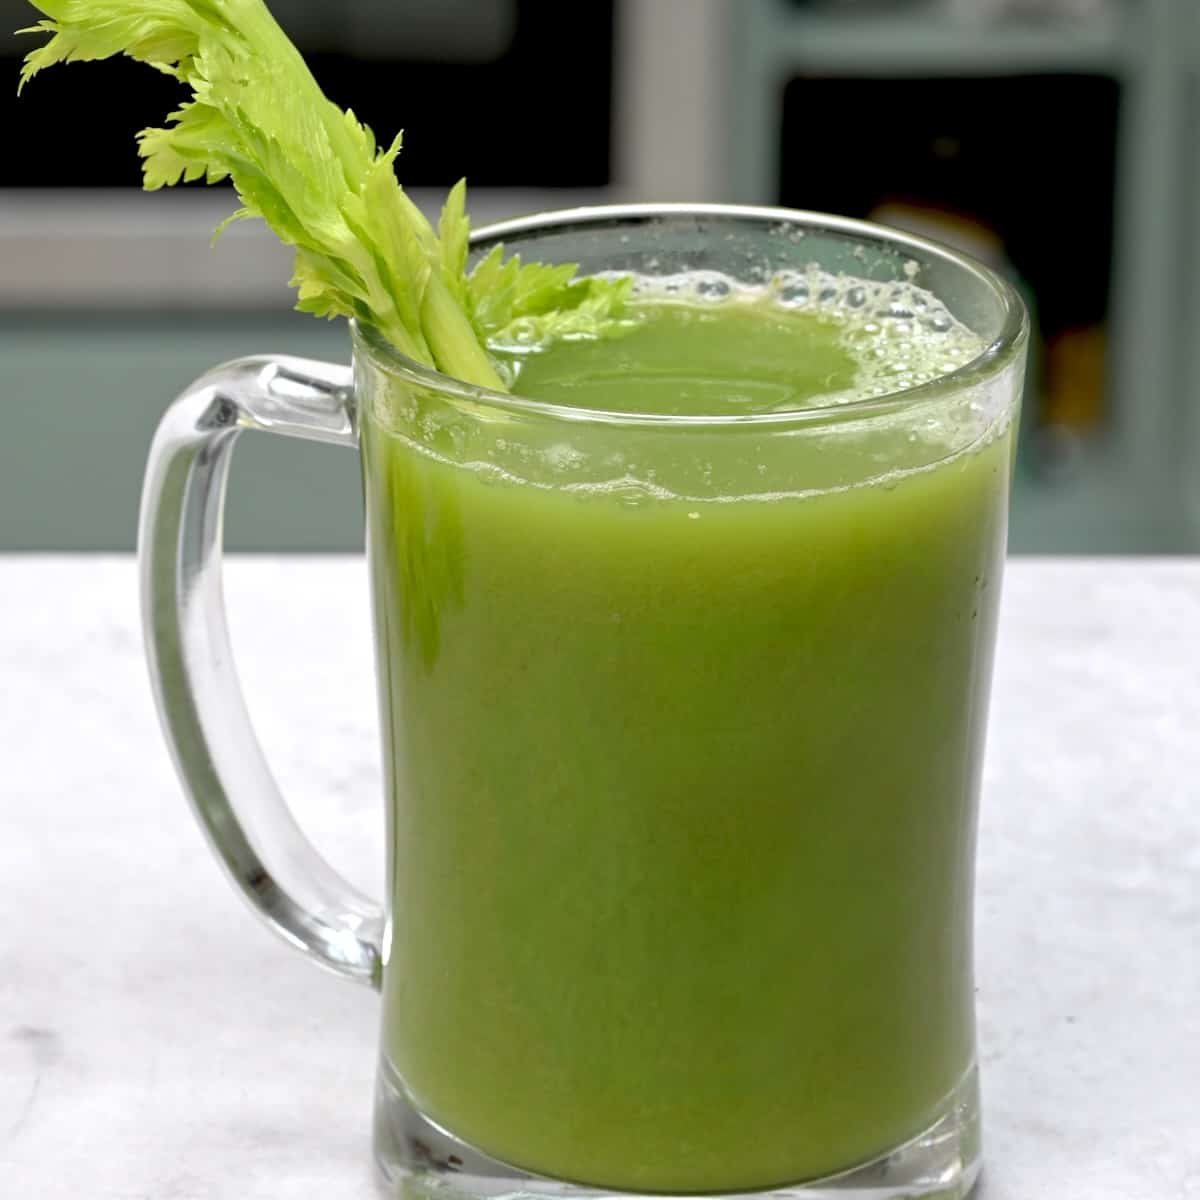 A glass of celery juice and a celery stalk